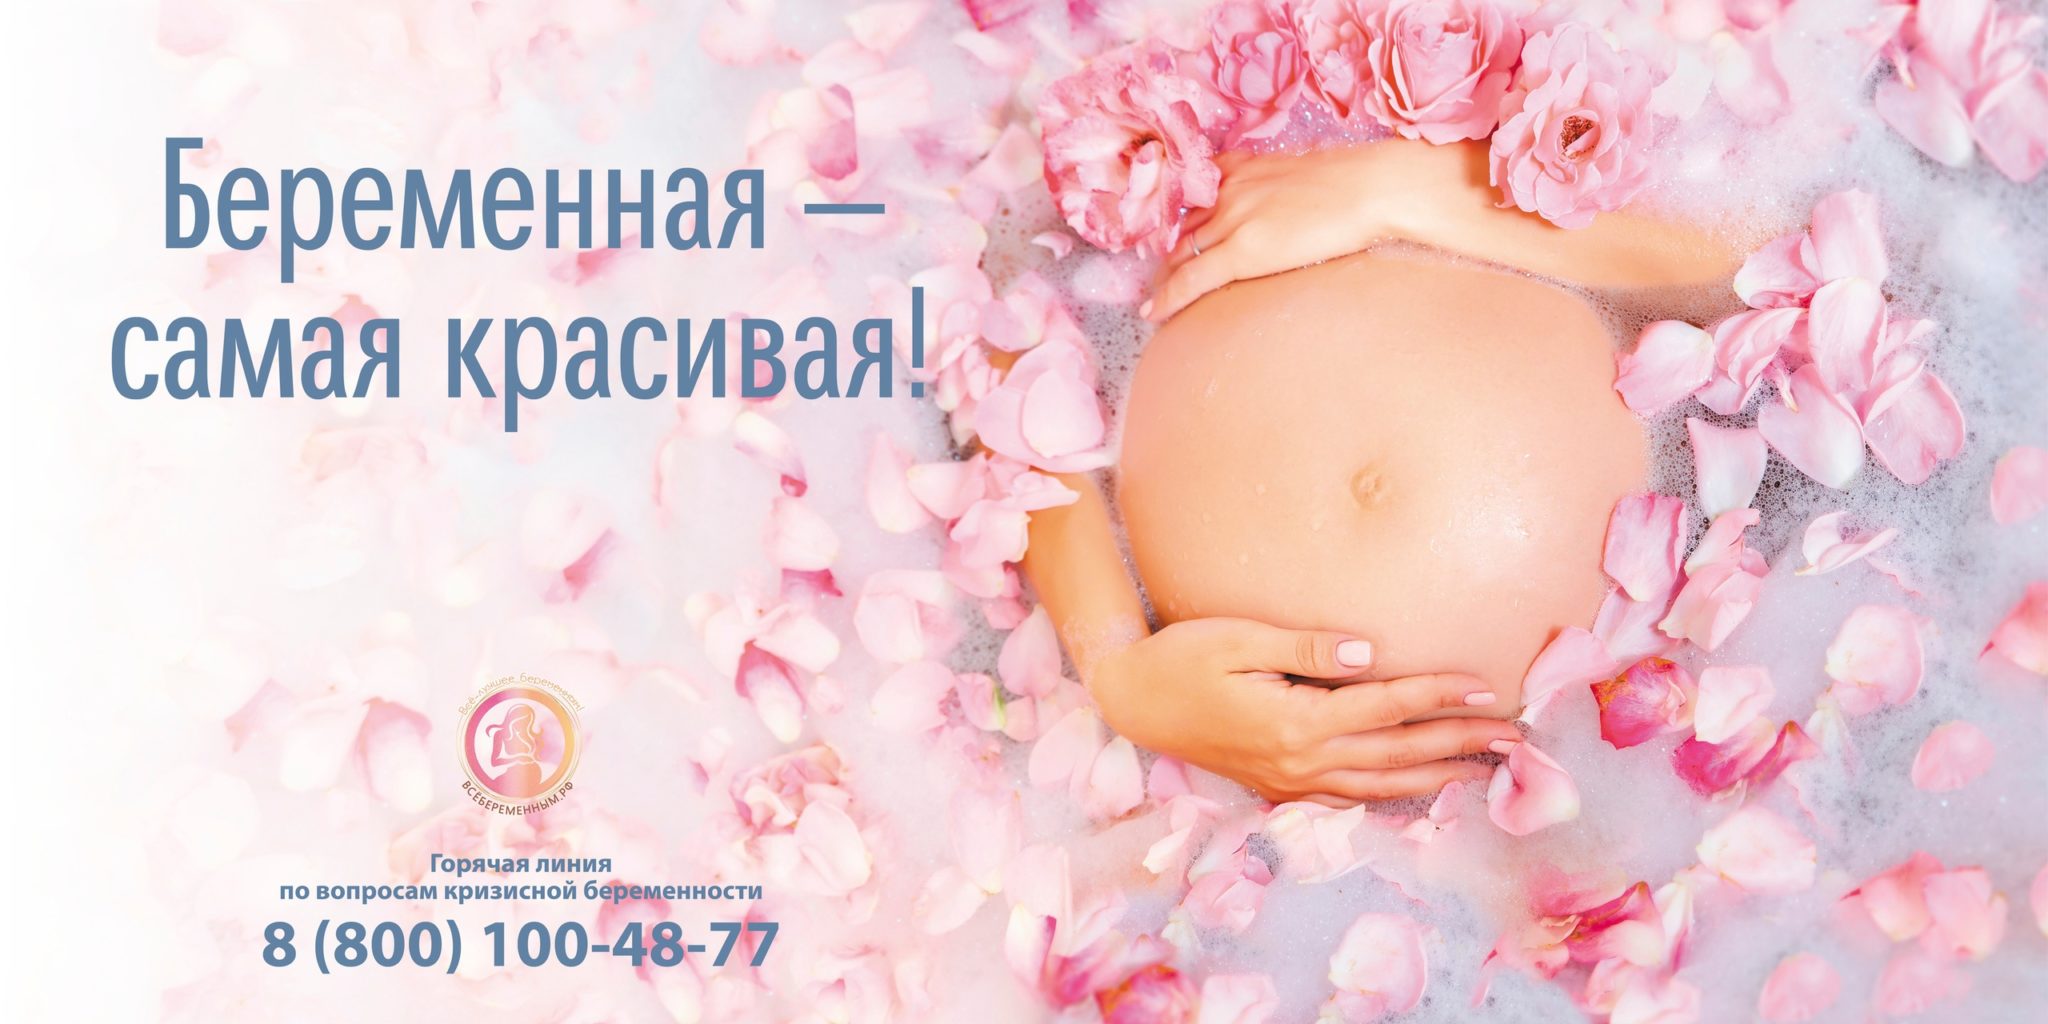 Все беременным рф. День беременных. Пожелания будущей маме. День беременных баннер. 07 Апреля день беременных.